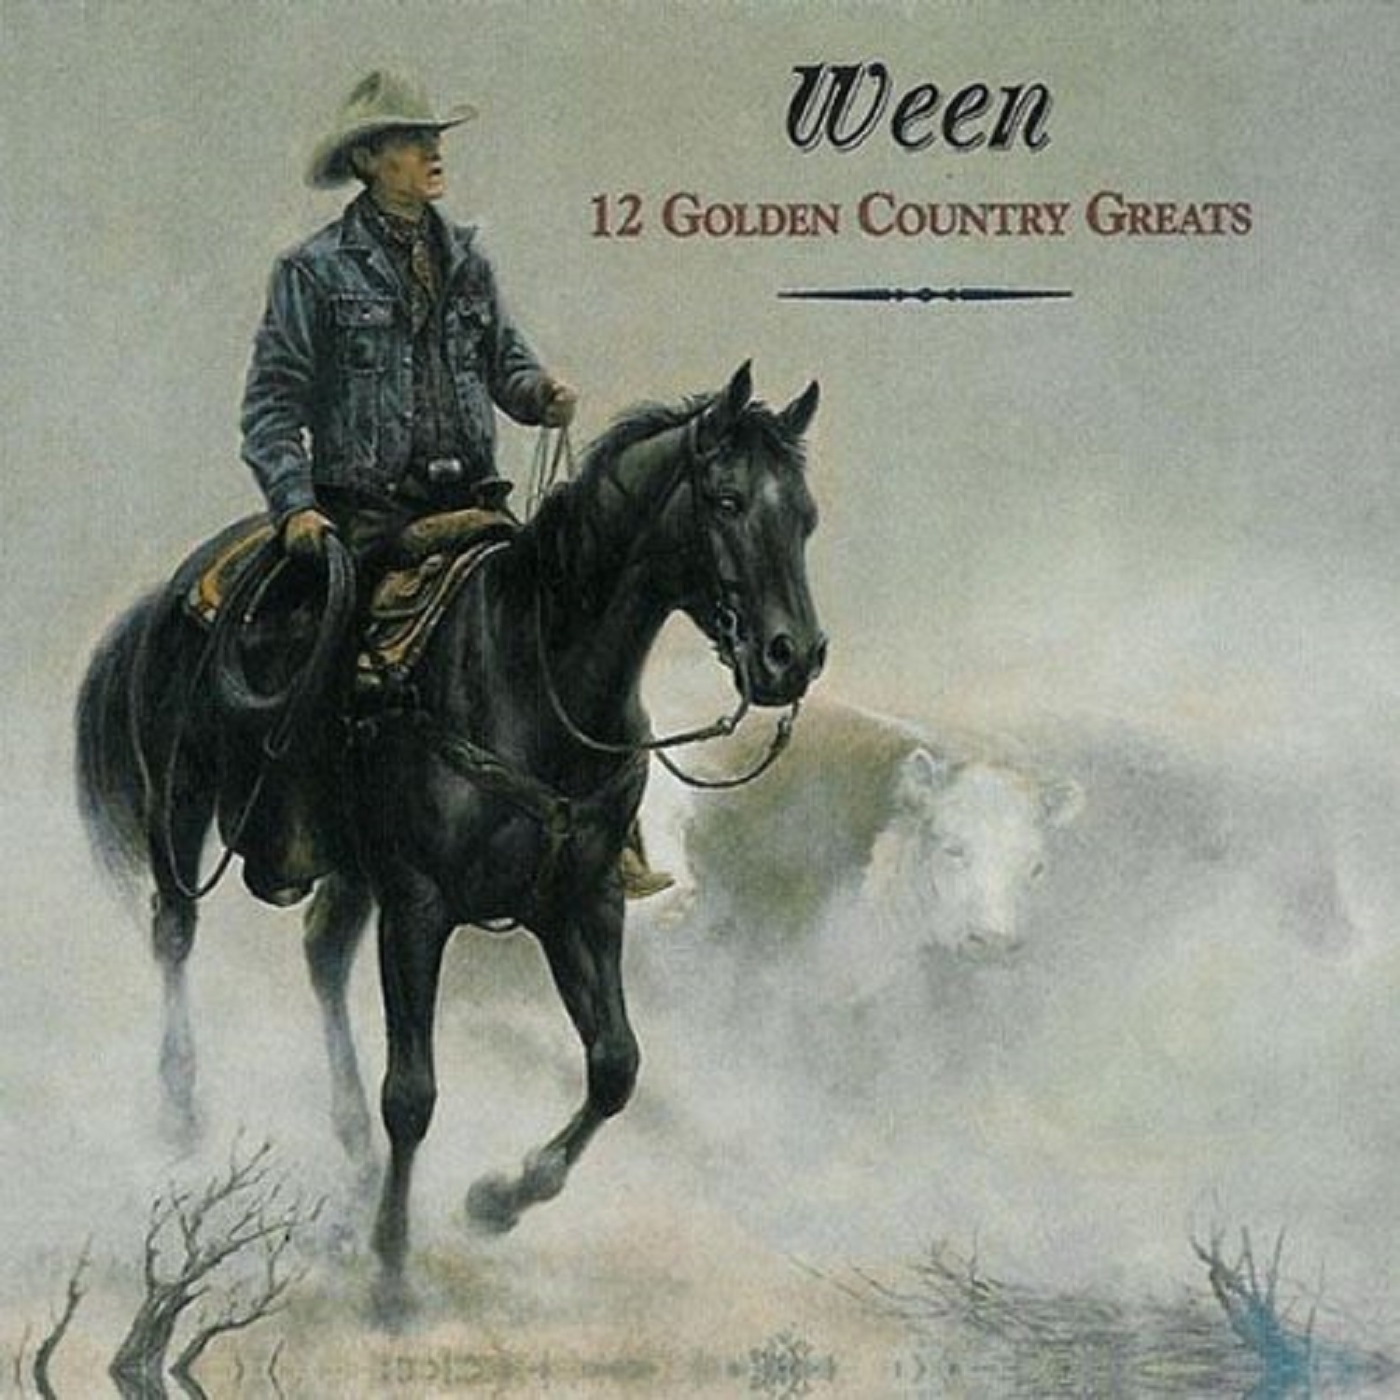 Ween's “12 Golden Country Greats” (with Matt Sumner)